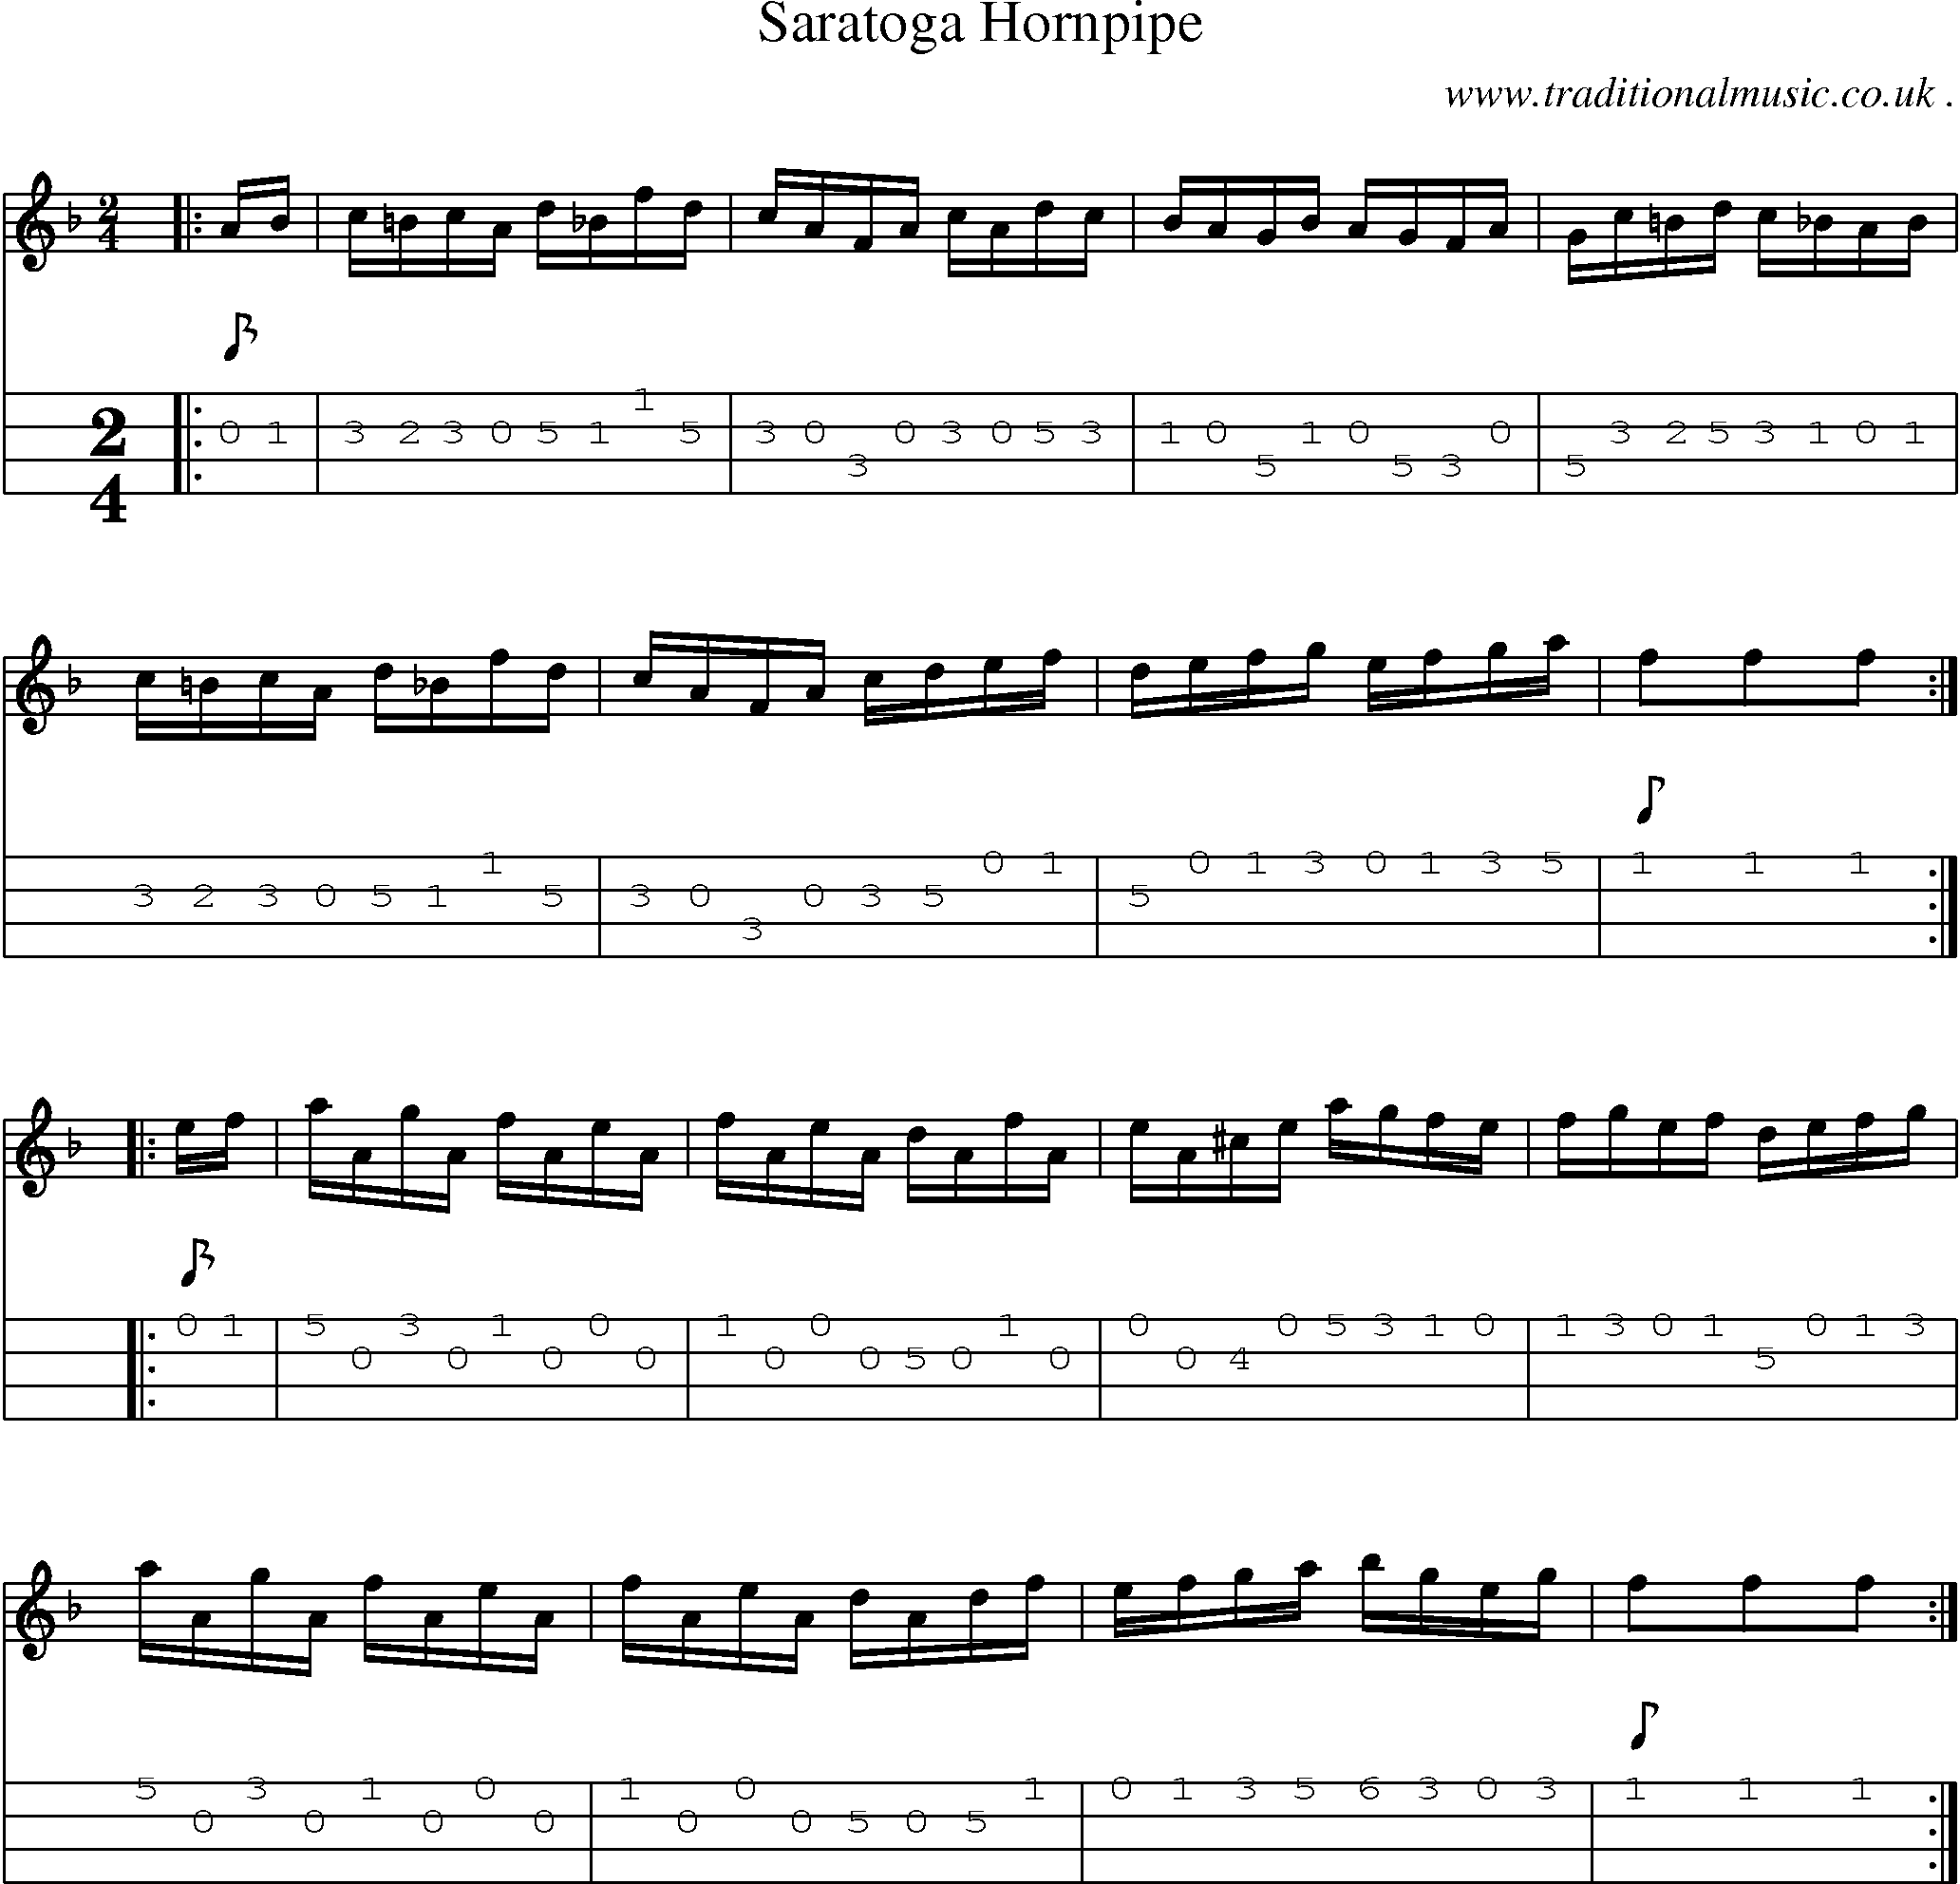 Music Score and Mandolin Tabs for Saratoga Hornpipe